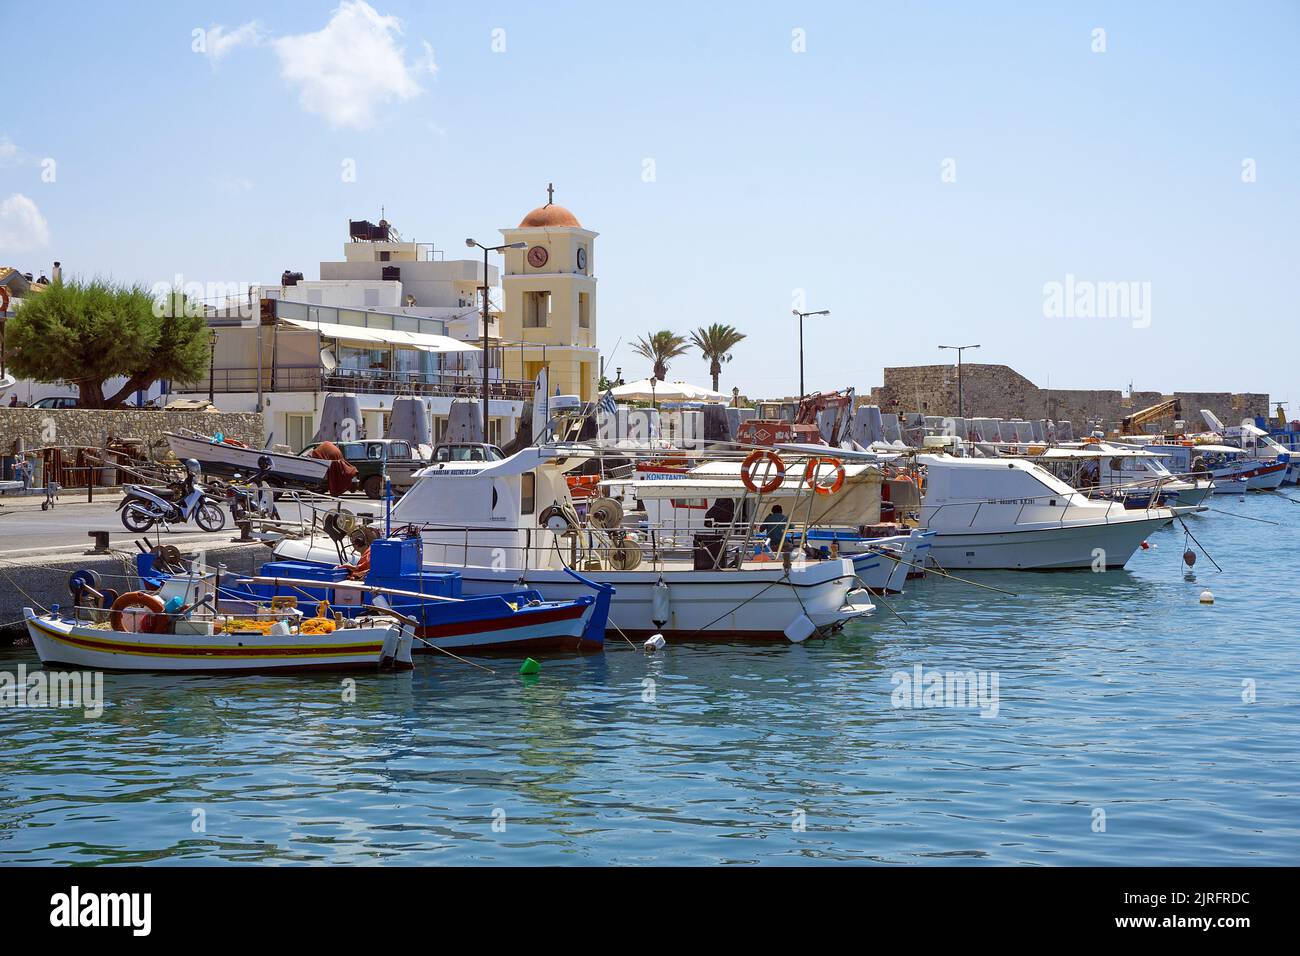 Fischerboote im Hafen von Ierapetra, der suedlichsten Stadt Griechenlands, Kreta, Griechenland, Europa | Fishing boats in the harbour of Ierapetra, th Stock Photo